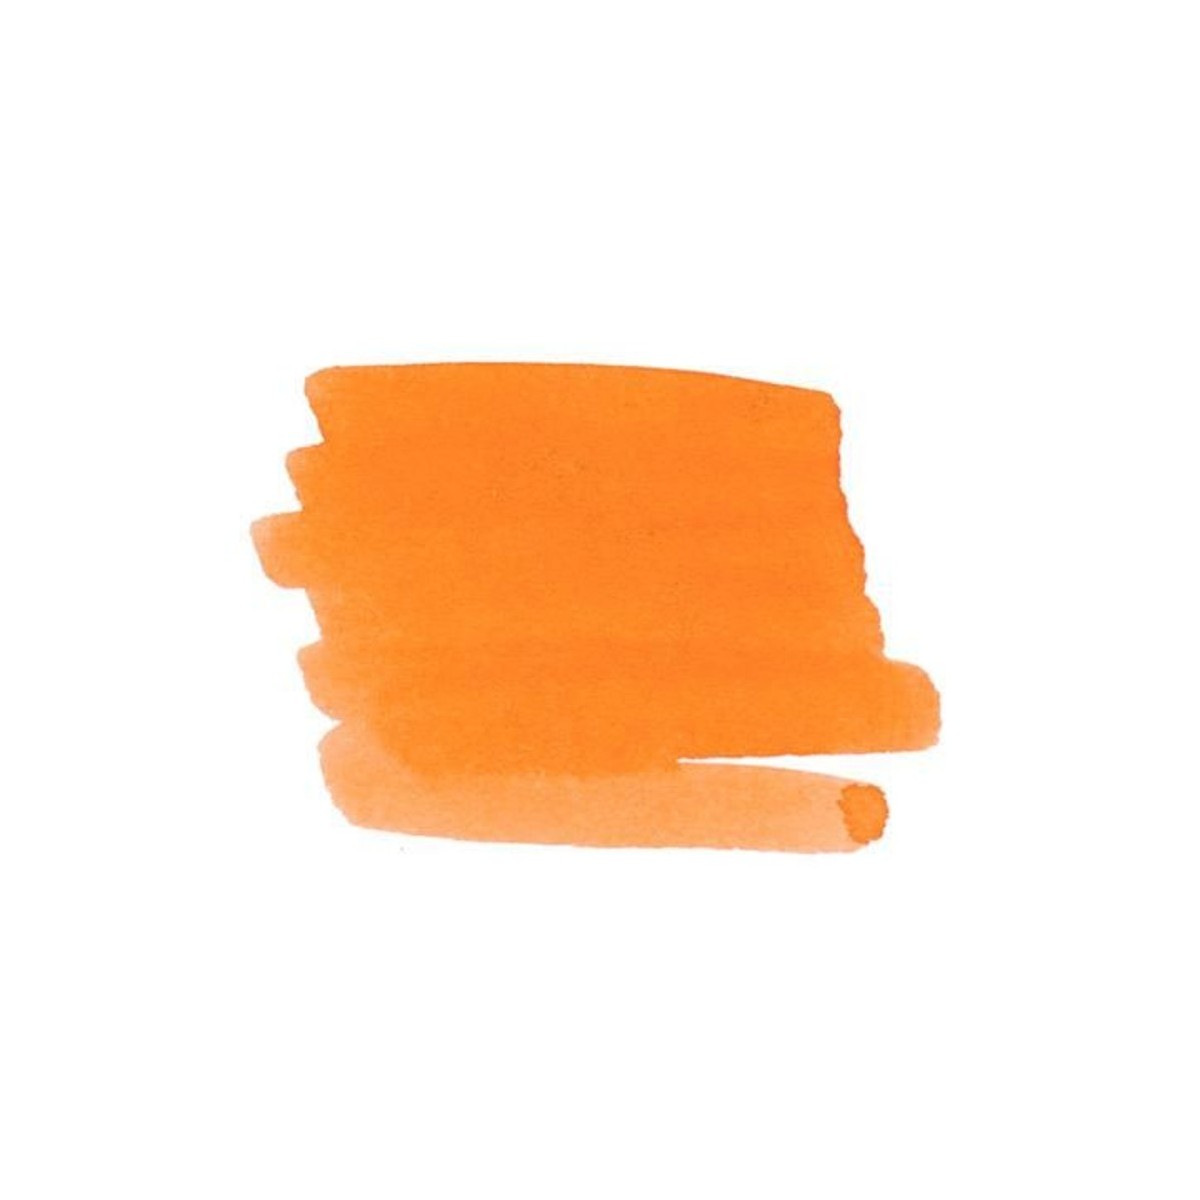 PELIKAN boccetta inchiostro arancione Edelstein penna